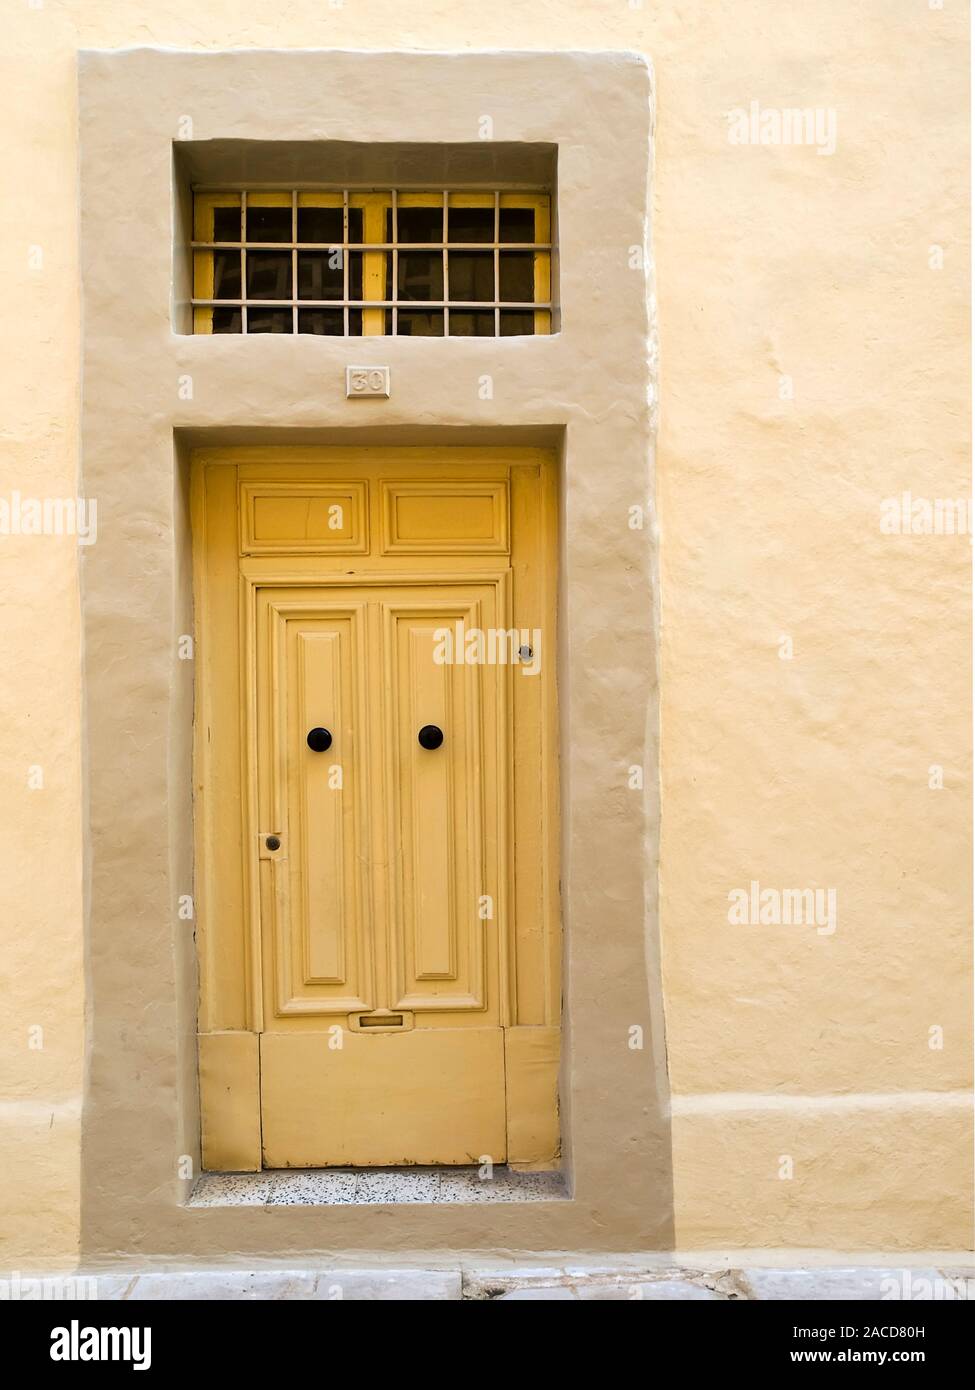 Eine seltsame Single Panel Tür in Mdina in solch einer Weise hergestellt wie in Anlehnung an die traditionelle doppelte Fenster Malta Tür Stockfoto